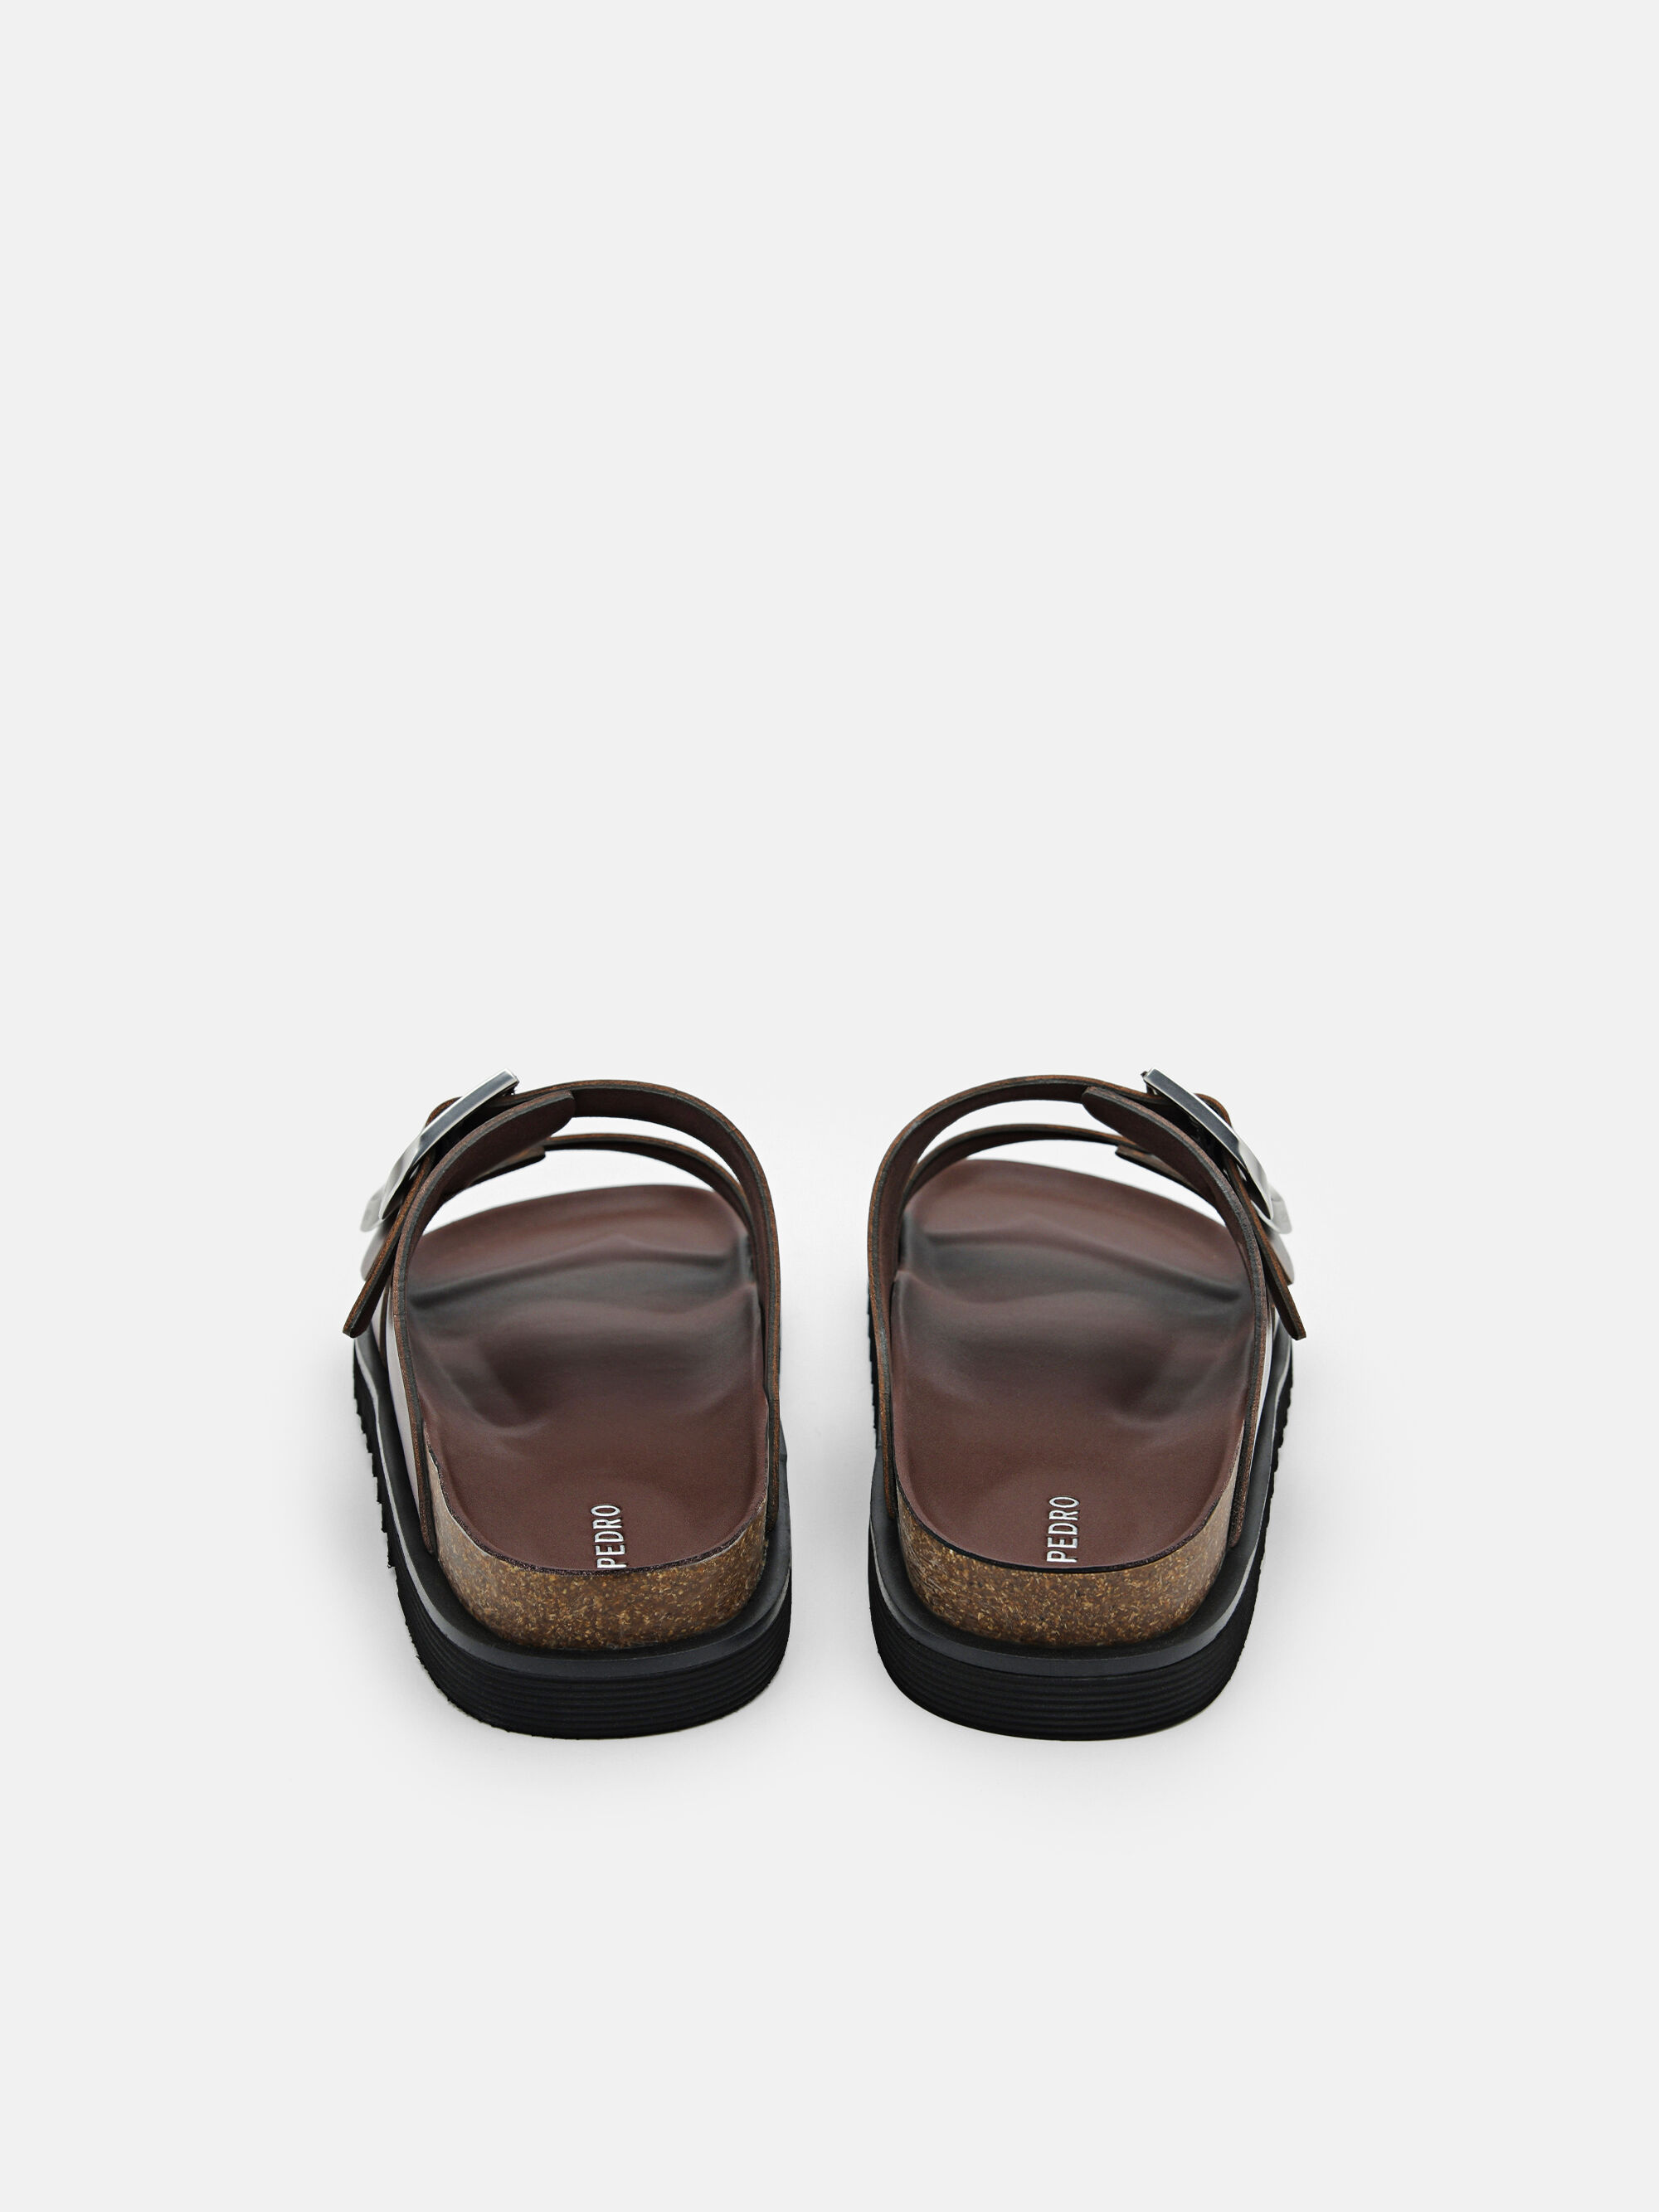 Men's Helix Slide Sandals, Dark Brown